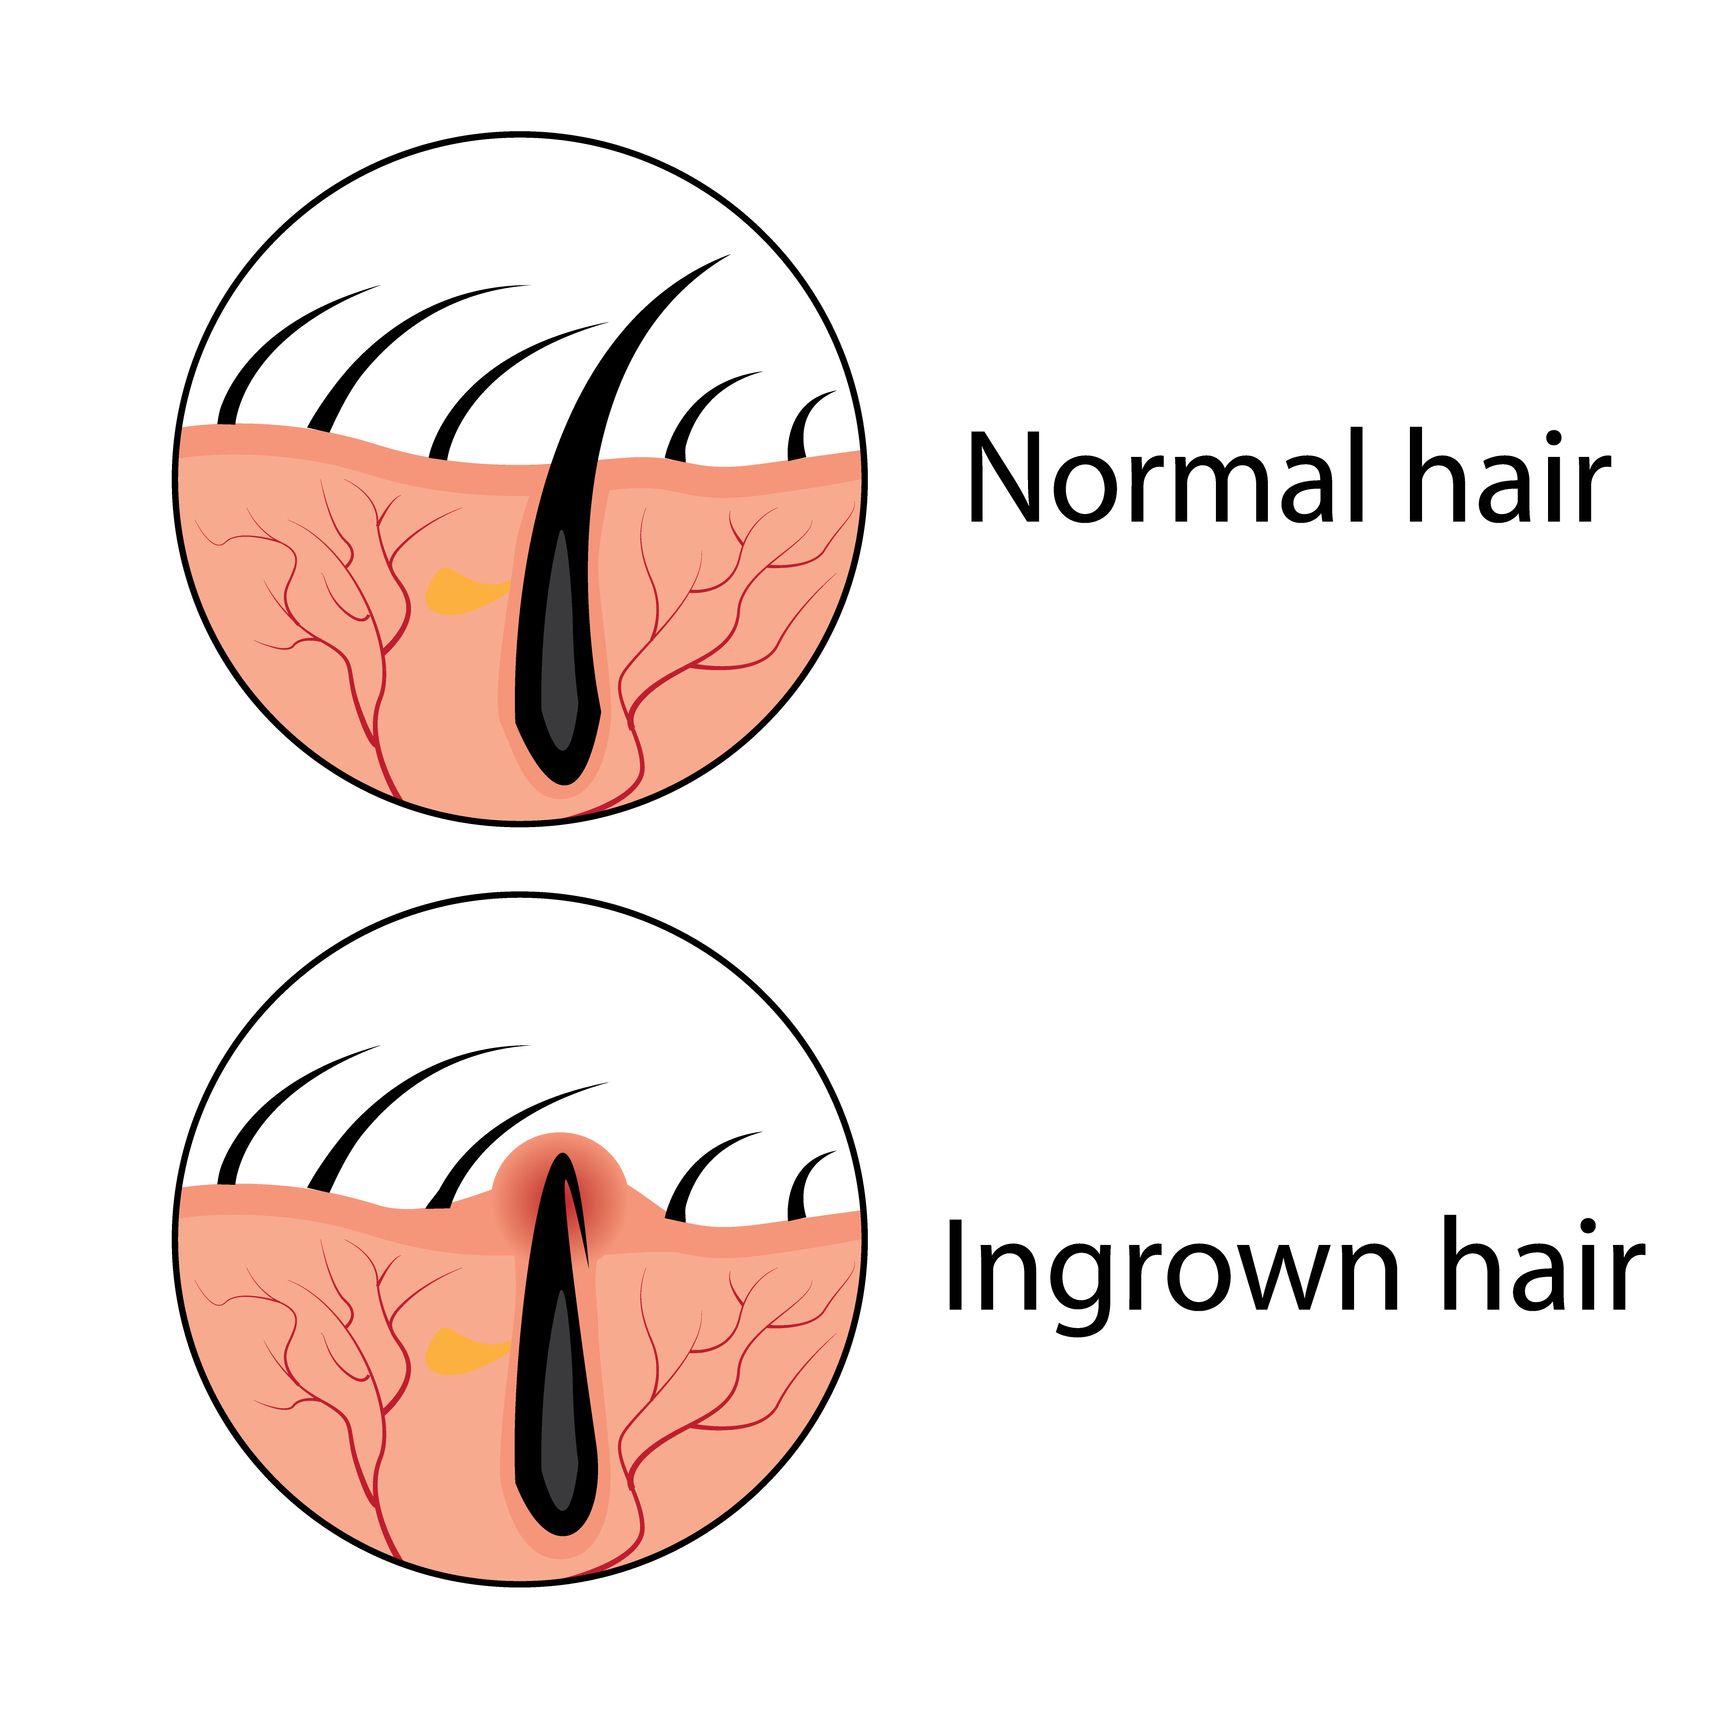 How to Treat Ingrown Hair